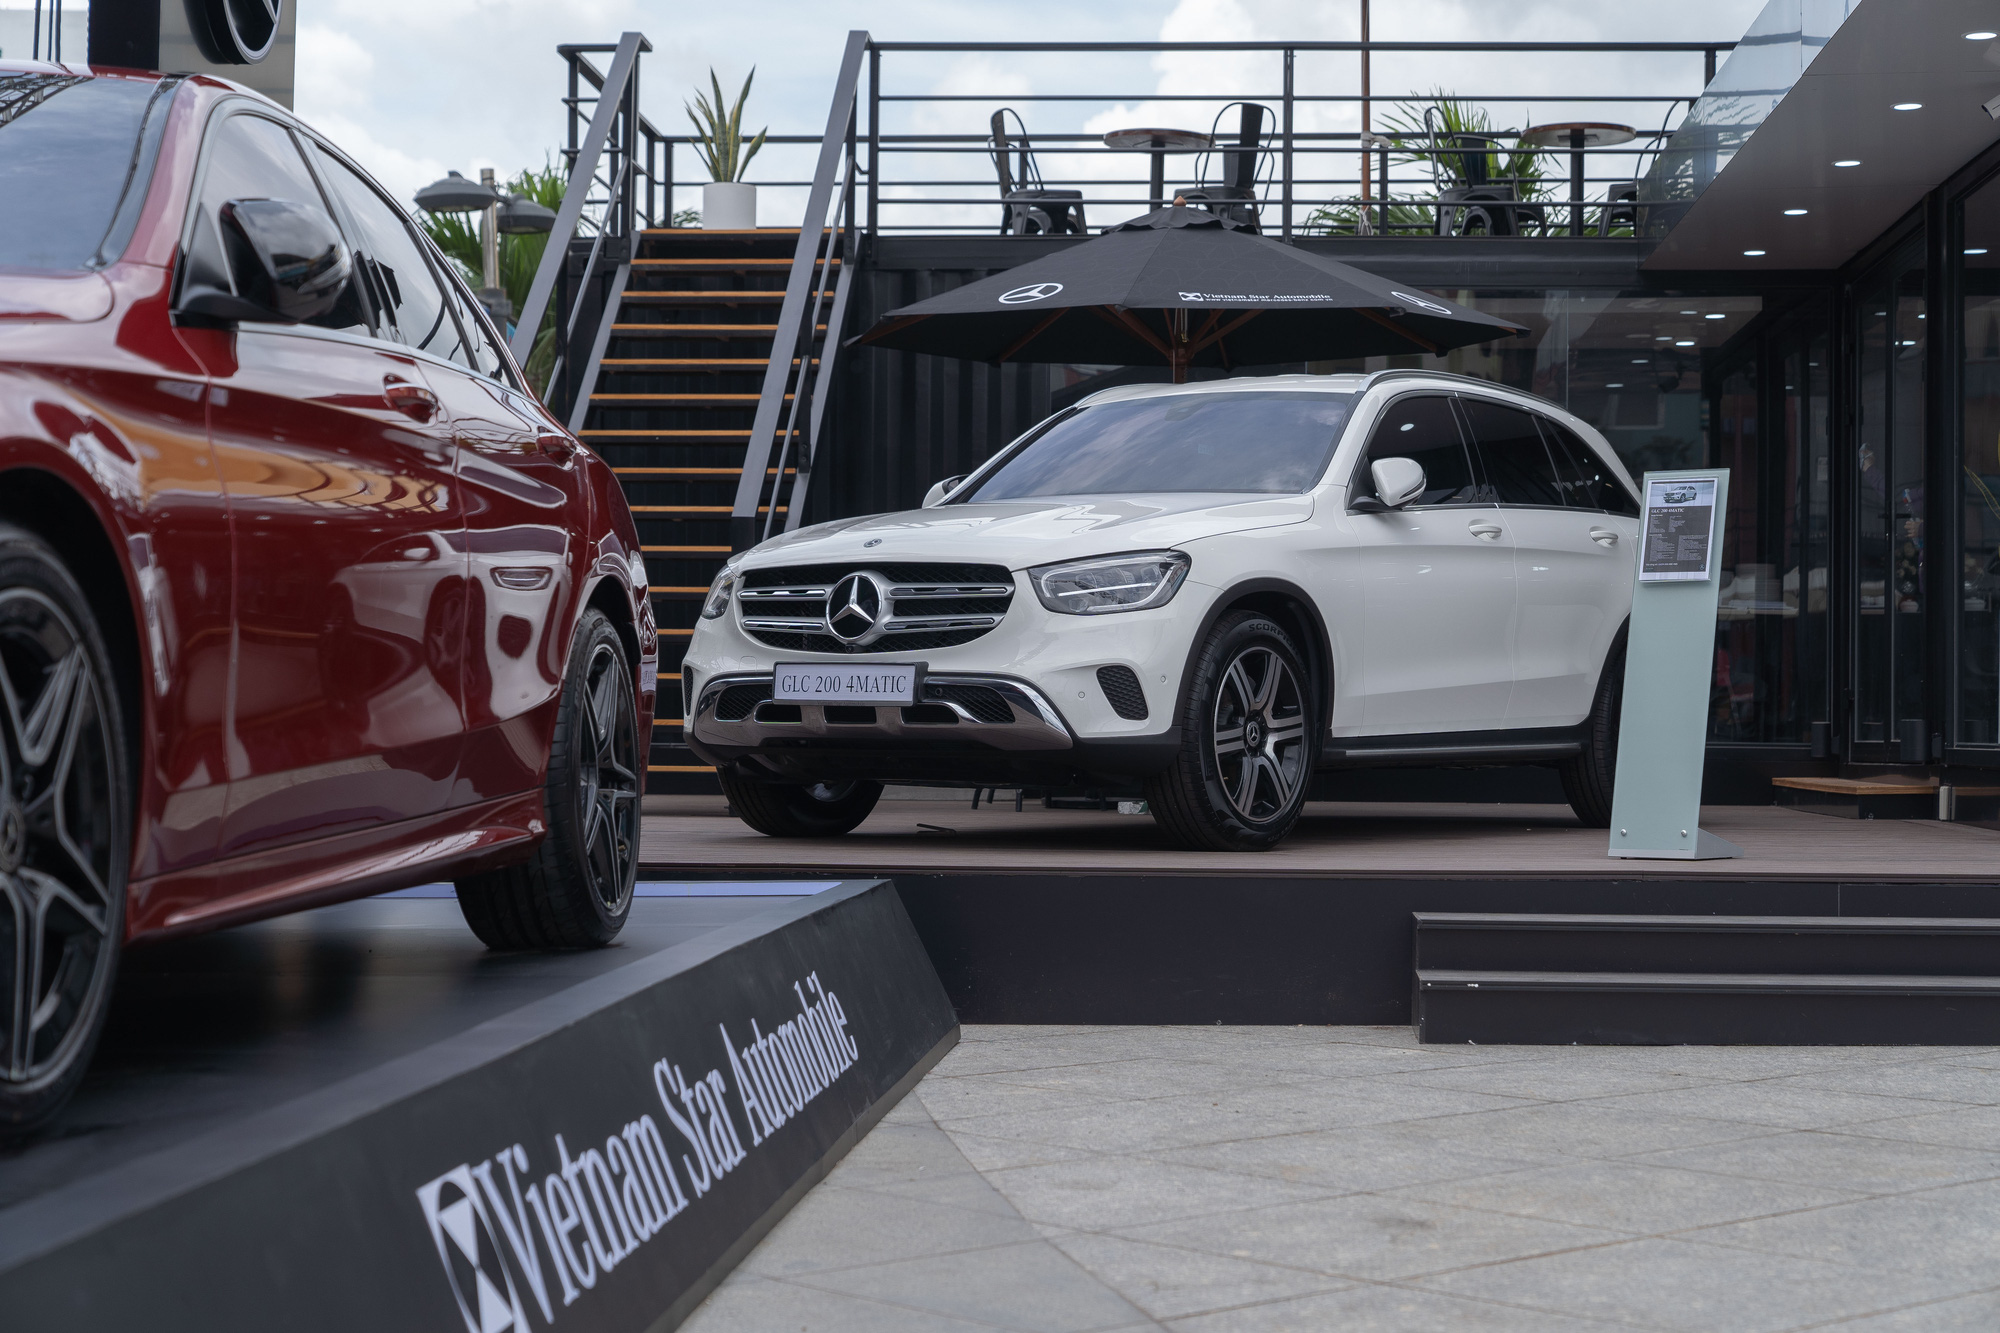 Khám phá showroom Mercedes-Benz di động lạ lẫm đầu tiên tại Việt Nam: Có thể đi muôn nơi, tiếp cùng lúc 20 khách hàng - Ảnh 6.